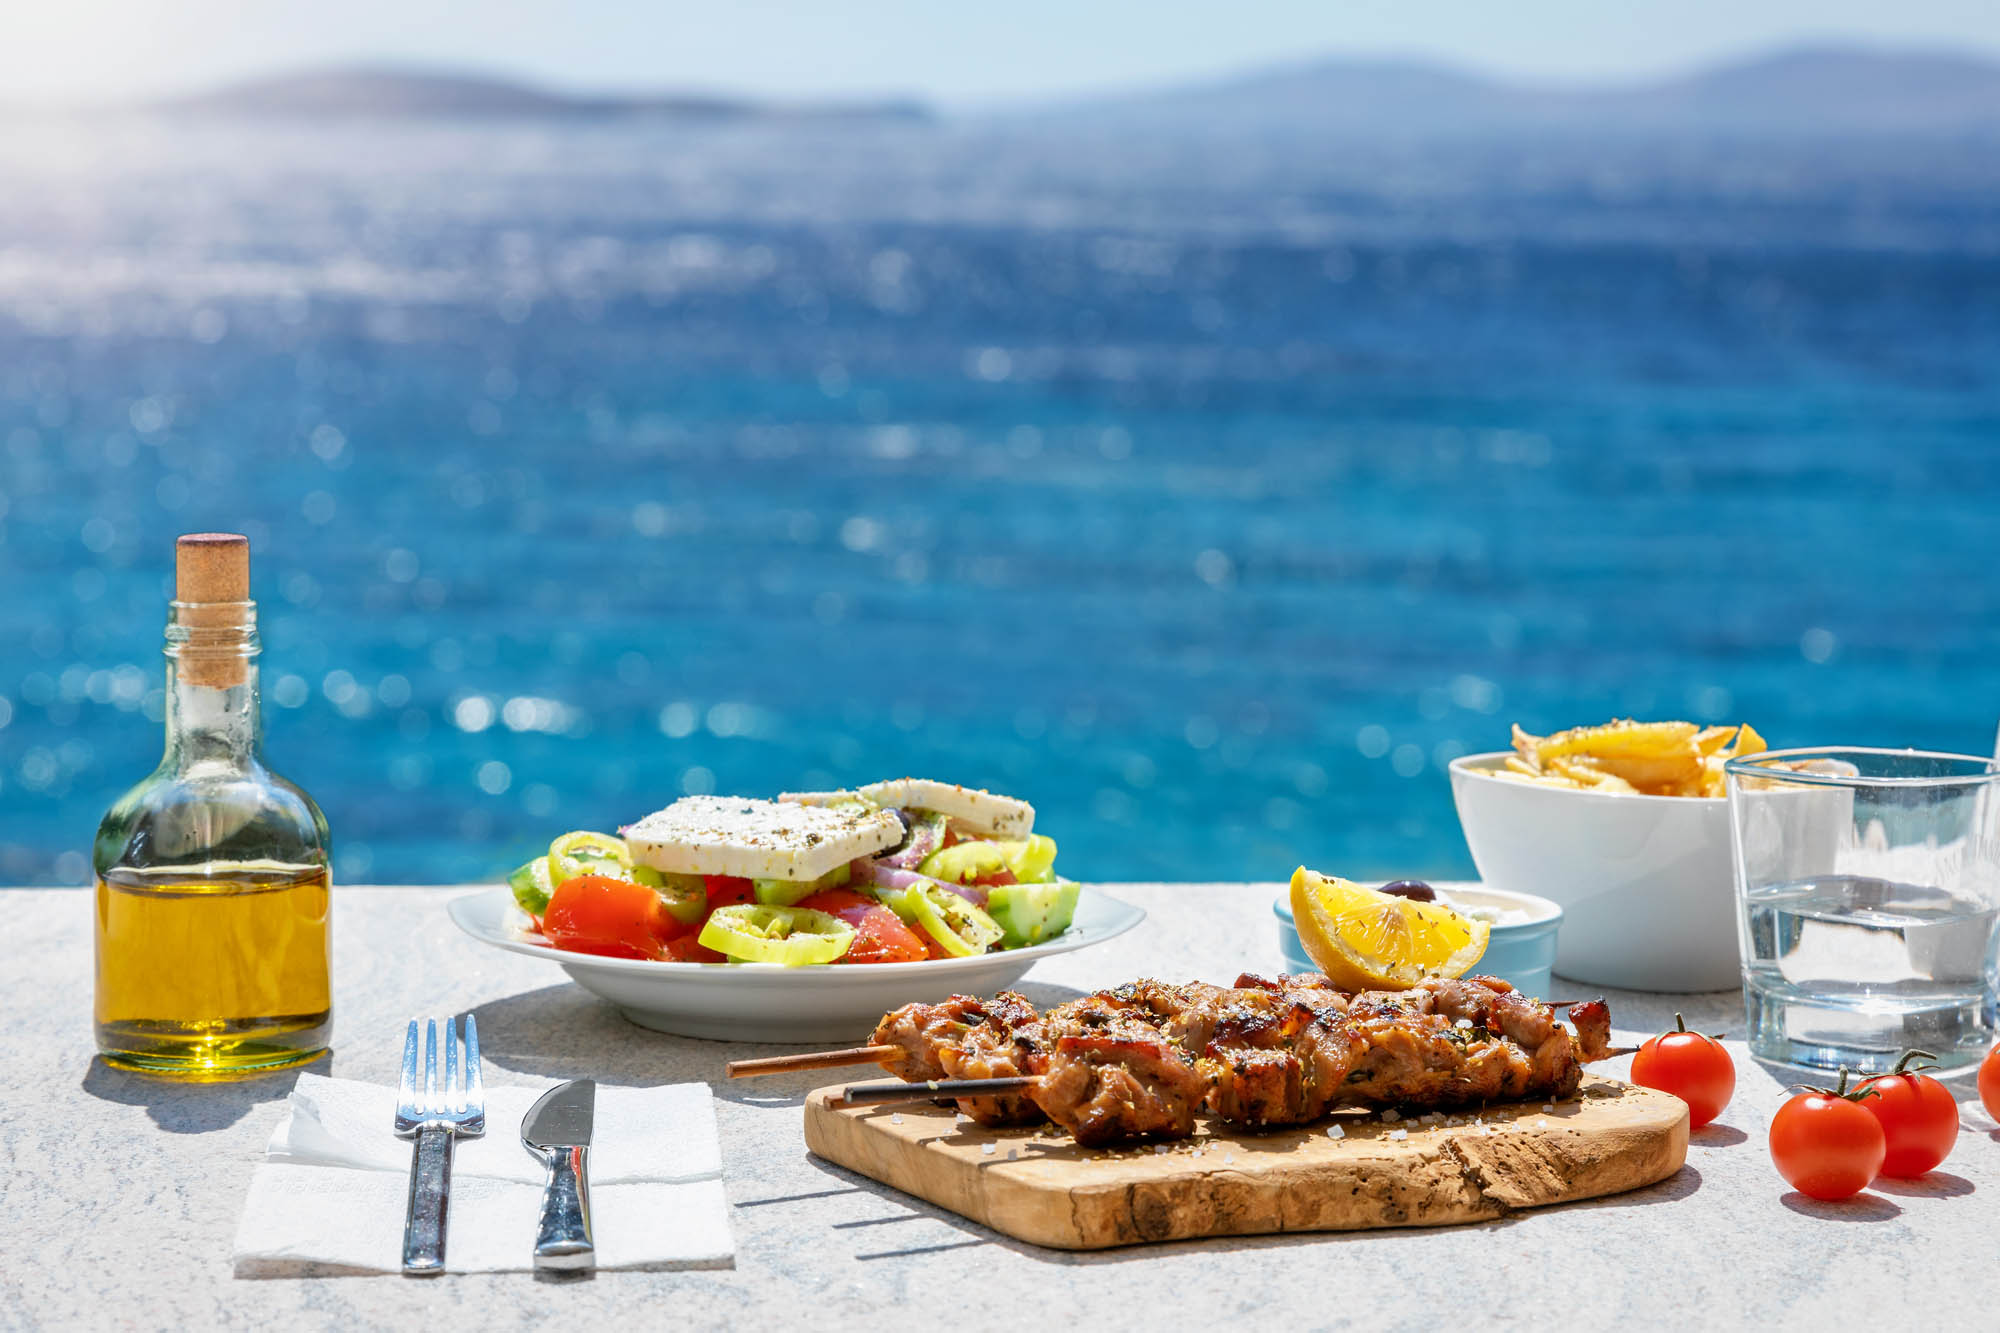 tradycyjny grecki stół, przekąski podane nad morzem, w tle błękitna woda i butelka oliwy